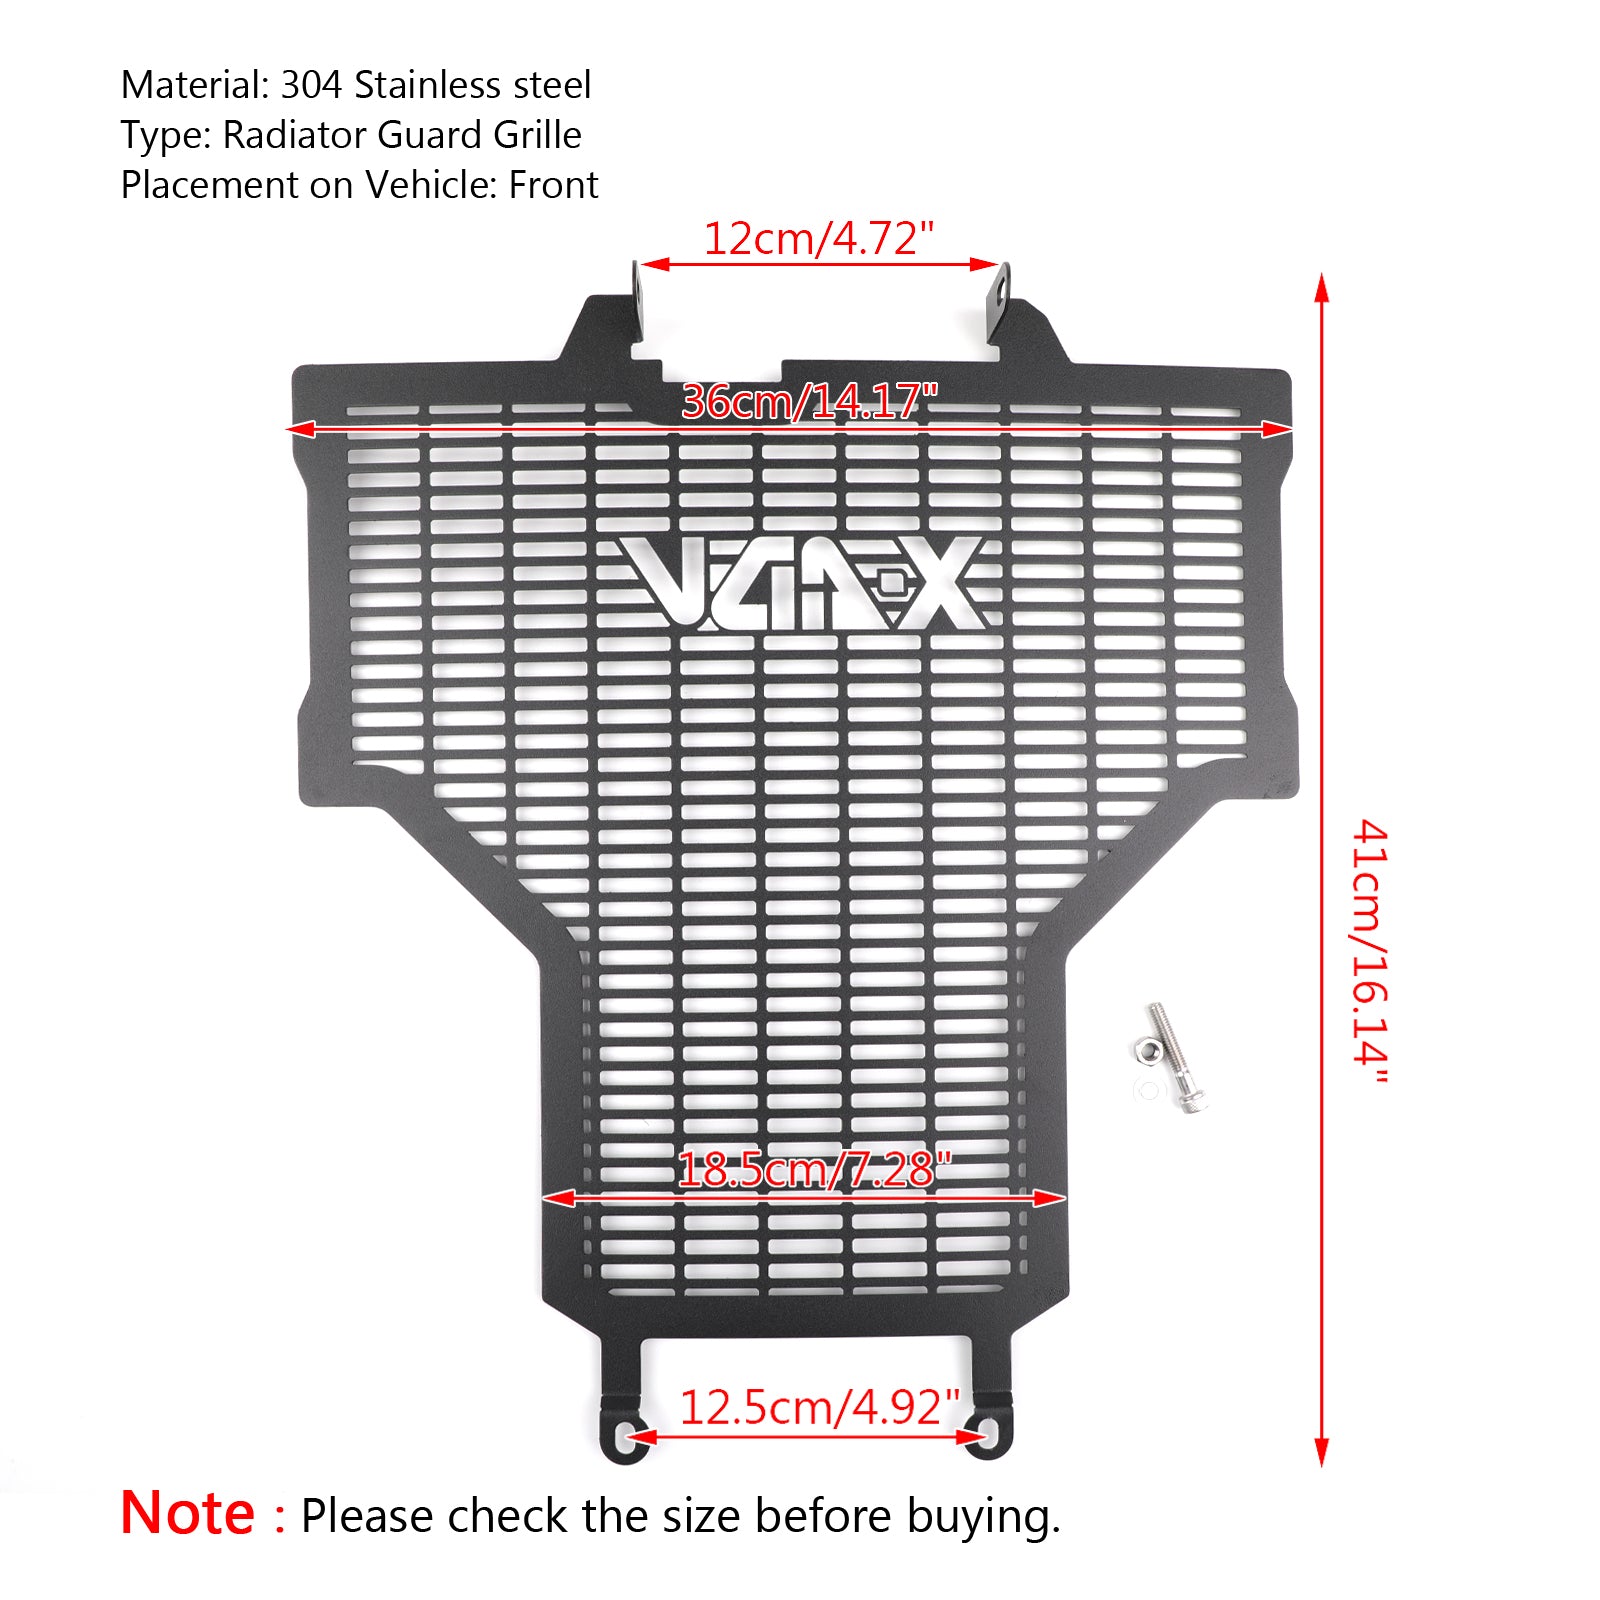 Protezione della copertura della protezione della griglia del dispositivo di raffreddamento del radiatore adatta per Honda X-ADV XADV 750 2017-2018